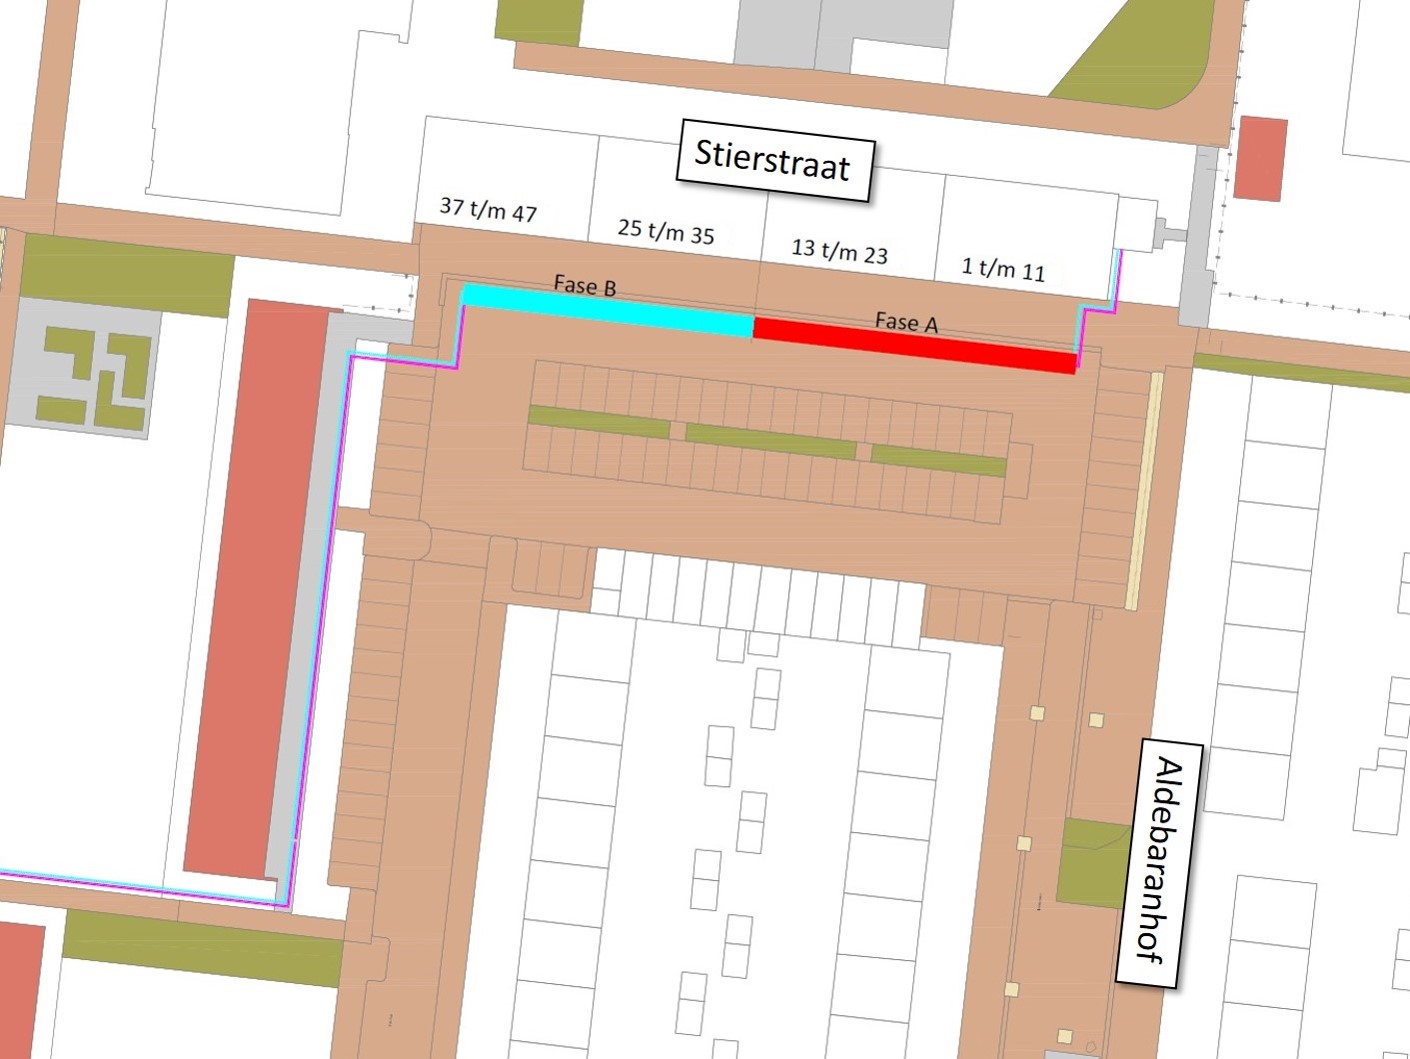 Plattegrond van de omgeving Stierstraat met daarop de locaties waar in fases gewerkt wordt.